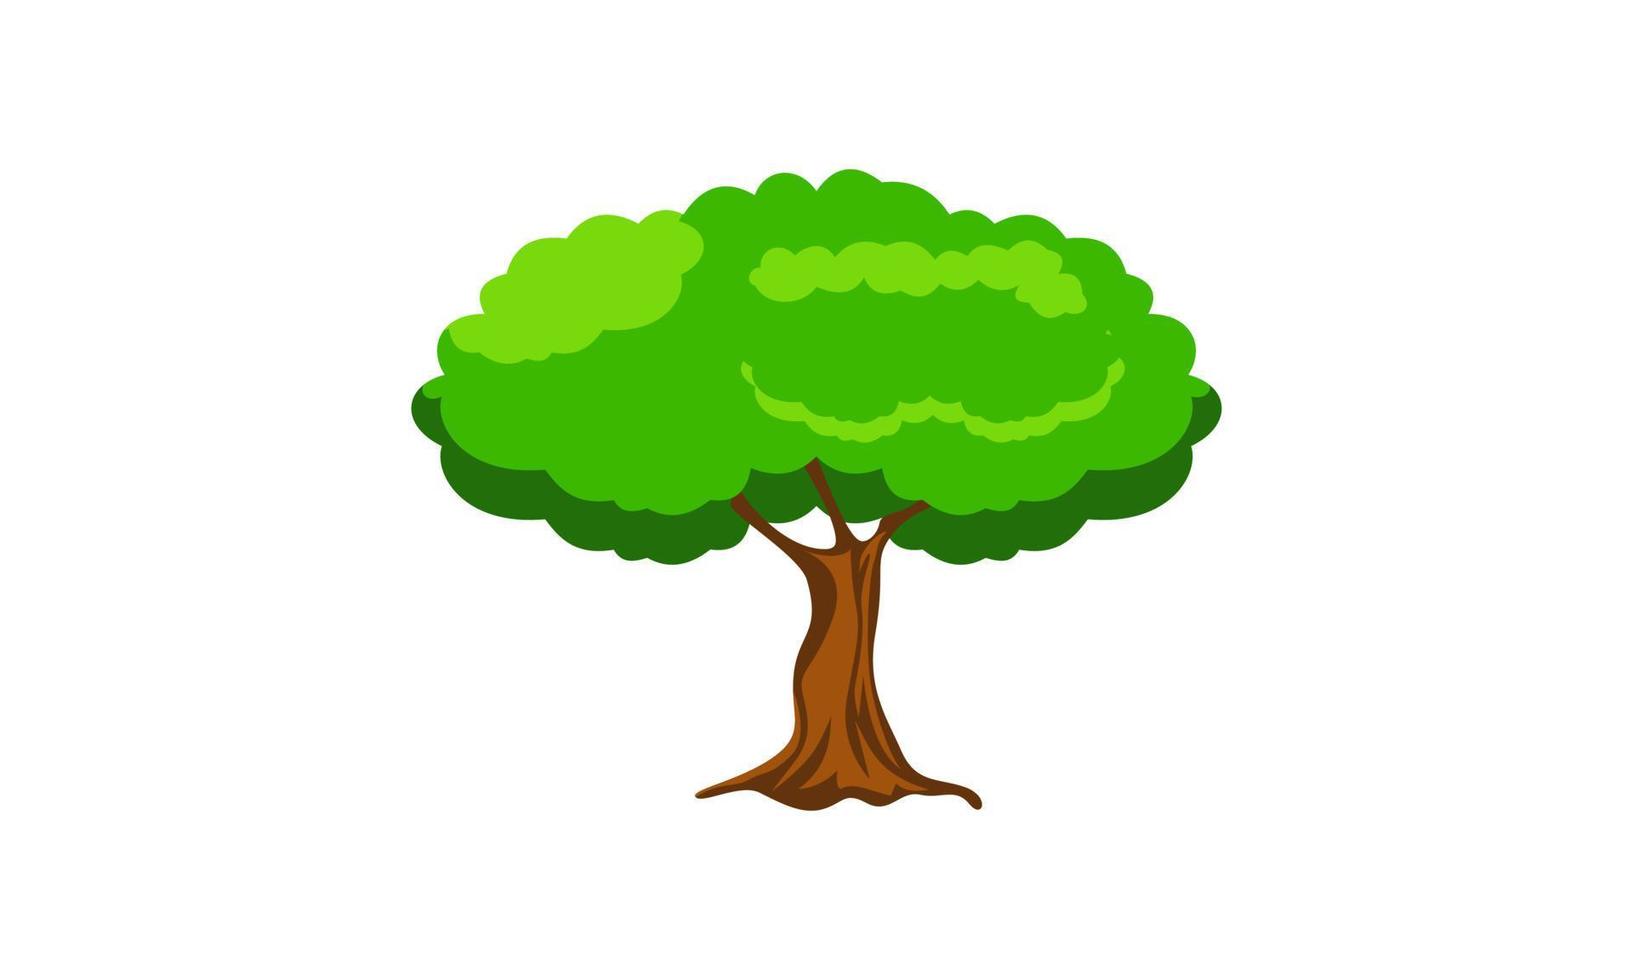 arbre vert à feuilles caduques avec des racines exposées illustration vectorielle isolée vecteur